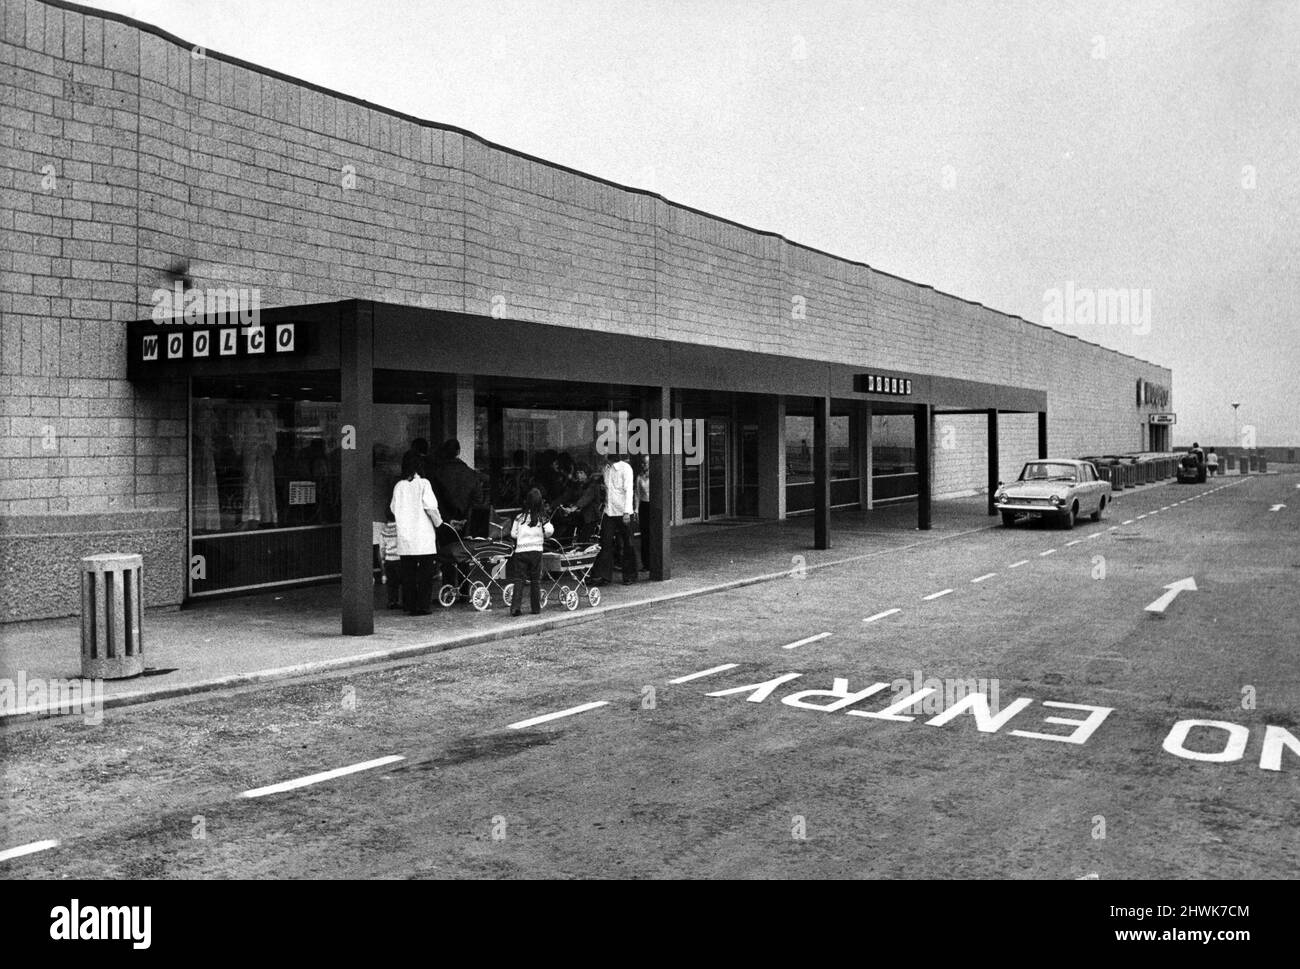 Der Haupteingang des neuen Woolco-Stores in Washington New Town verfügt über elektrisch betätigte Türen - genau wie ein moderner Flughafen. Dieses Bild zeigt einen Teil des riesigen Parkplatzes. 28. Mai 1973. Stockfoto